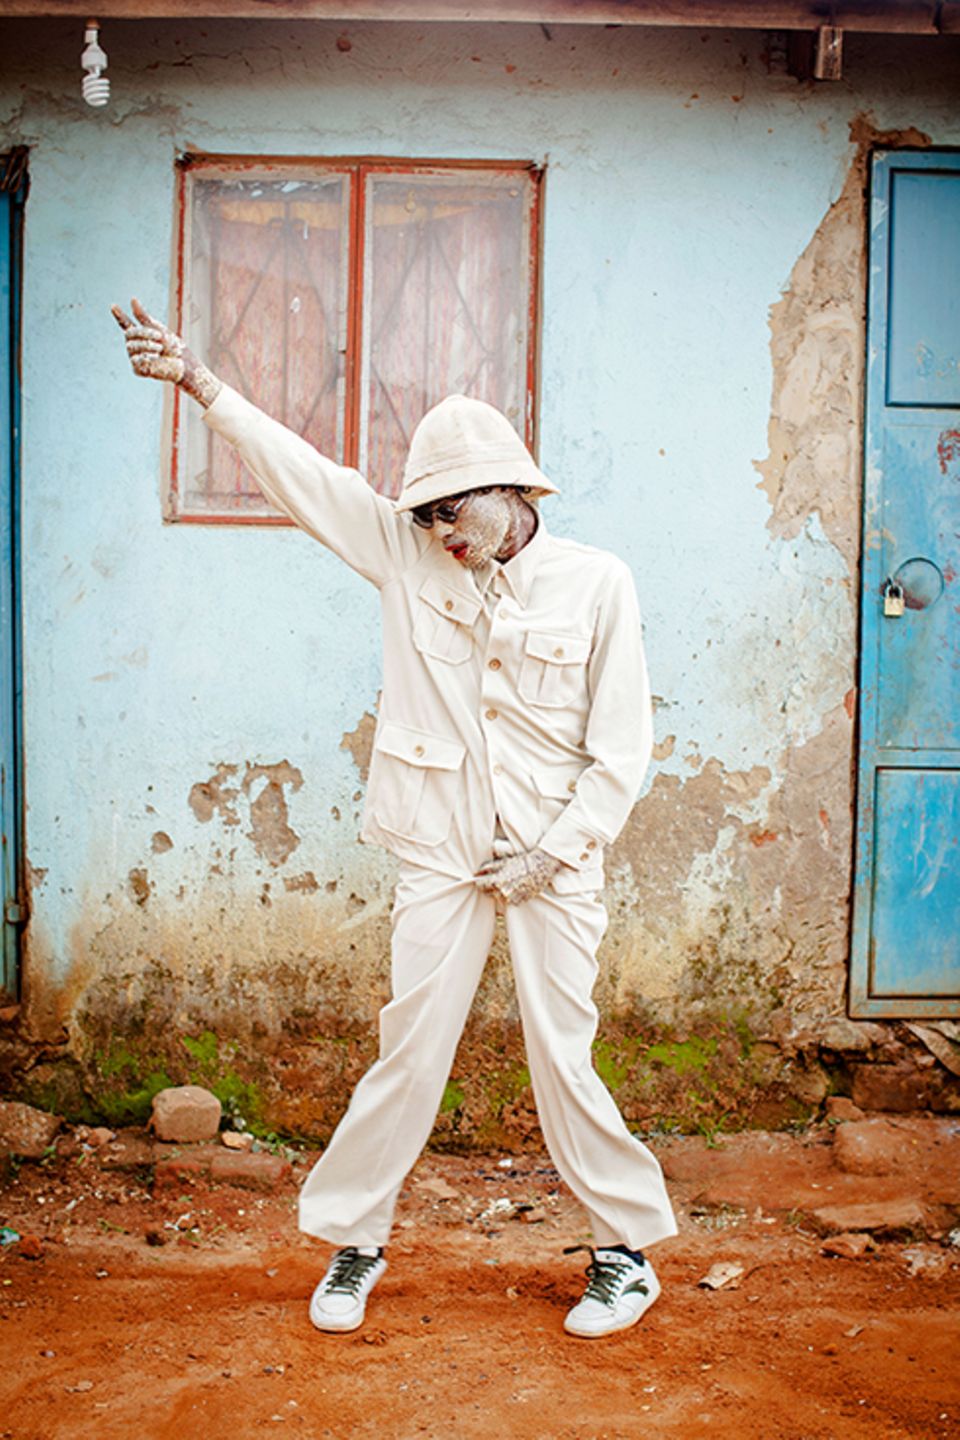 Zuhause: Für ein Musikvideo hat sich einer der Schauspieler als Michael Jackson verkleidet. Die Farbe im Gesicht ist aus Eiern und Mehl zusammengekleistert